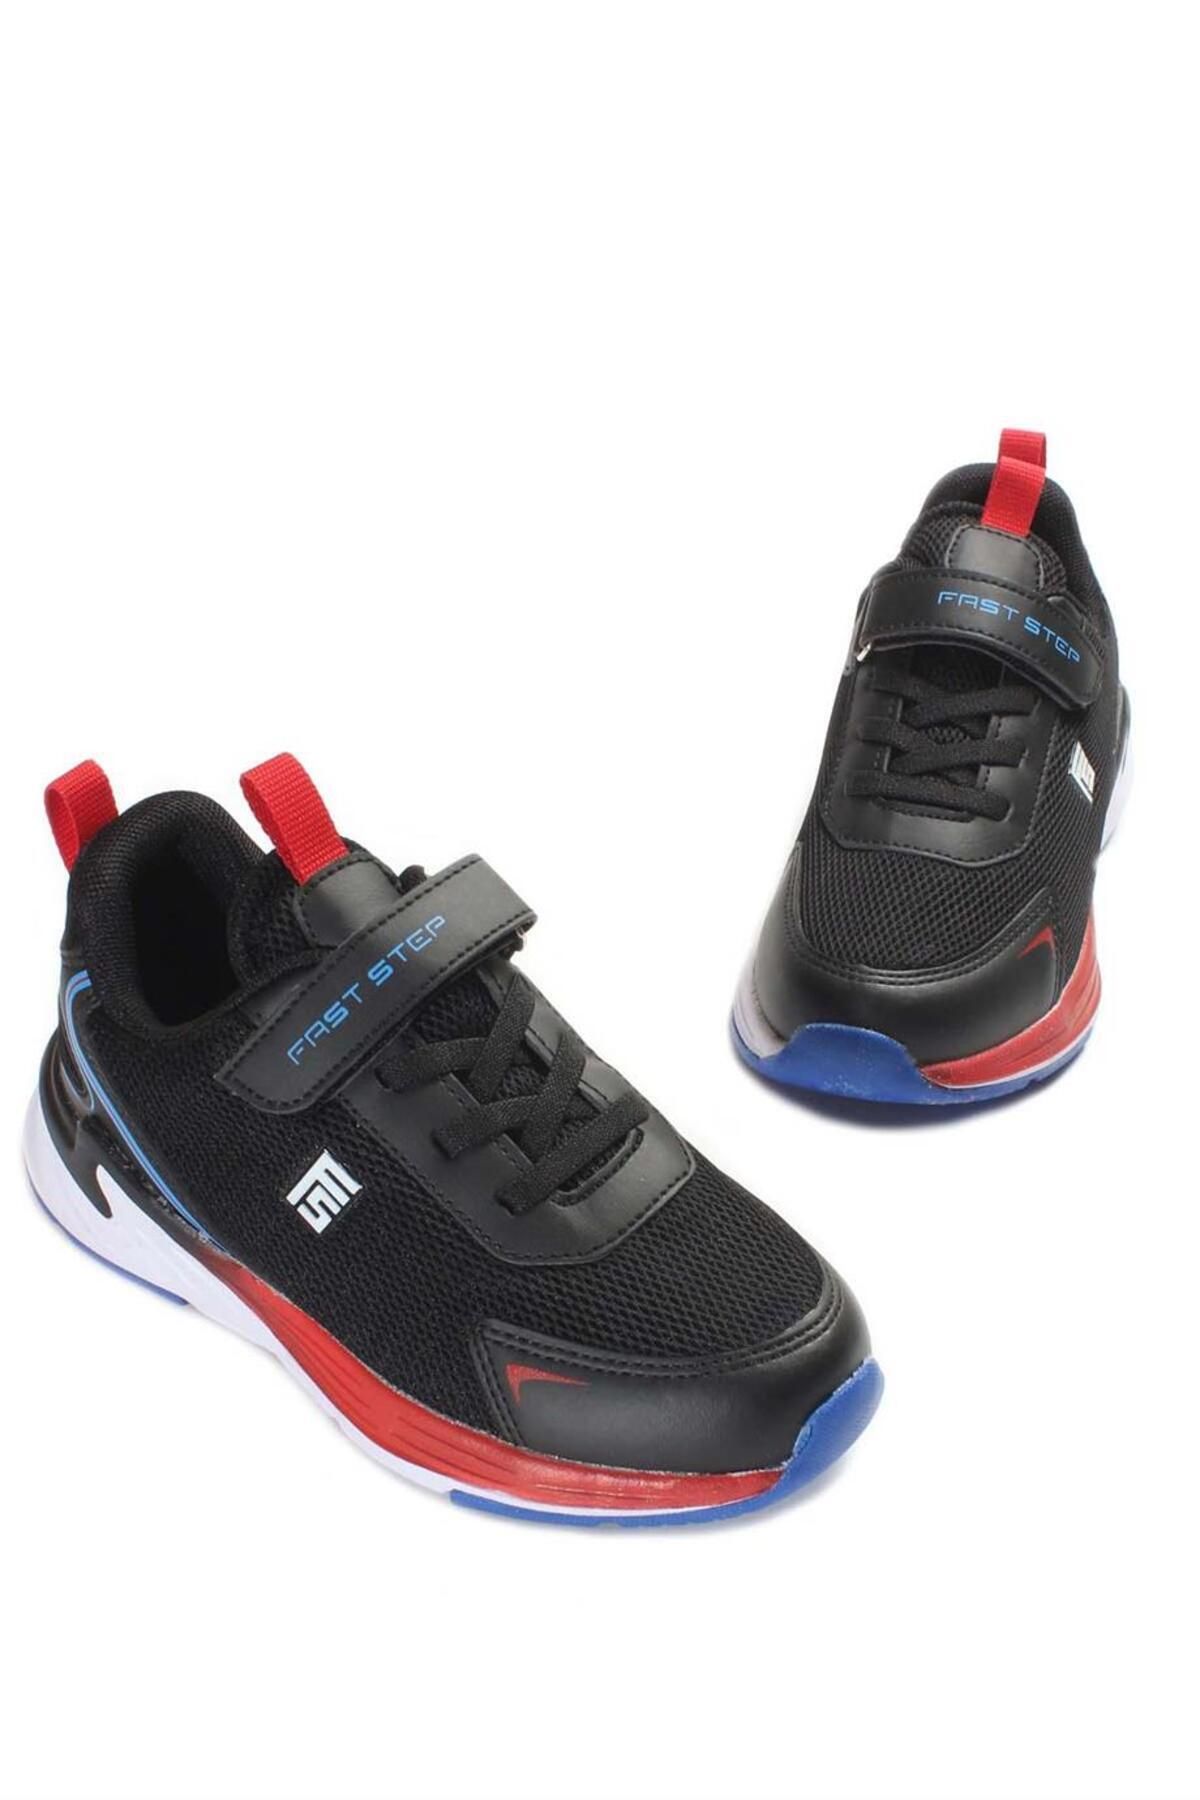 Fast Step Siyah Saks Kirmizi Unisex Çocuk Sneaker Ayakkabı 991xa1251